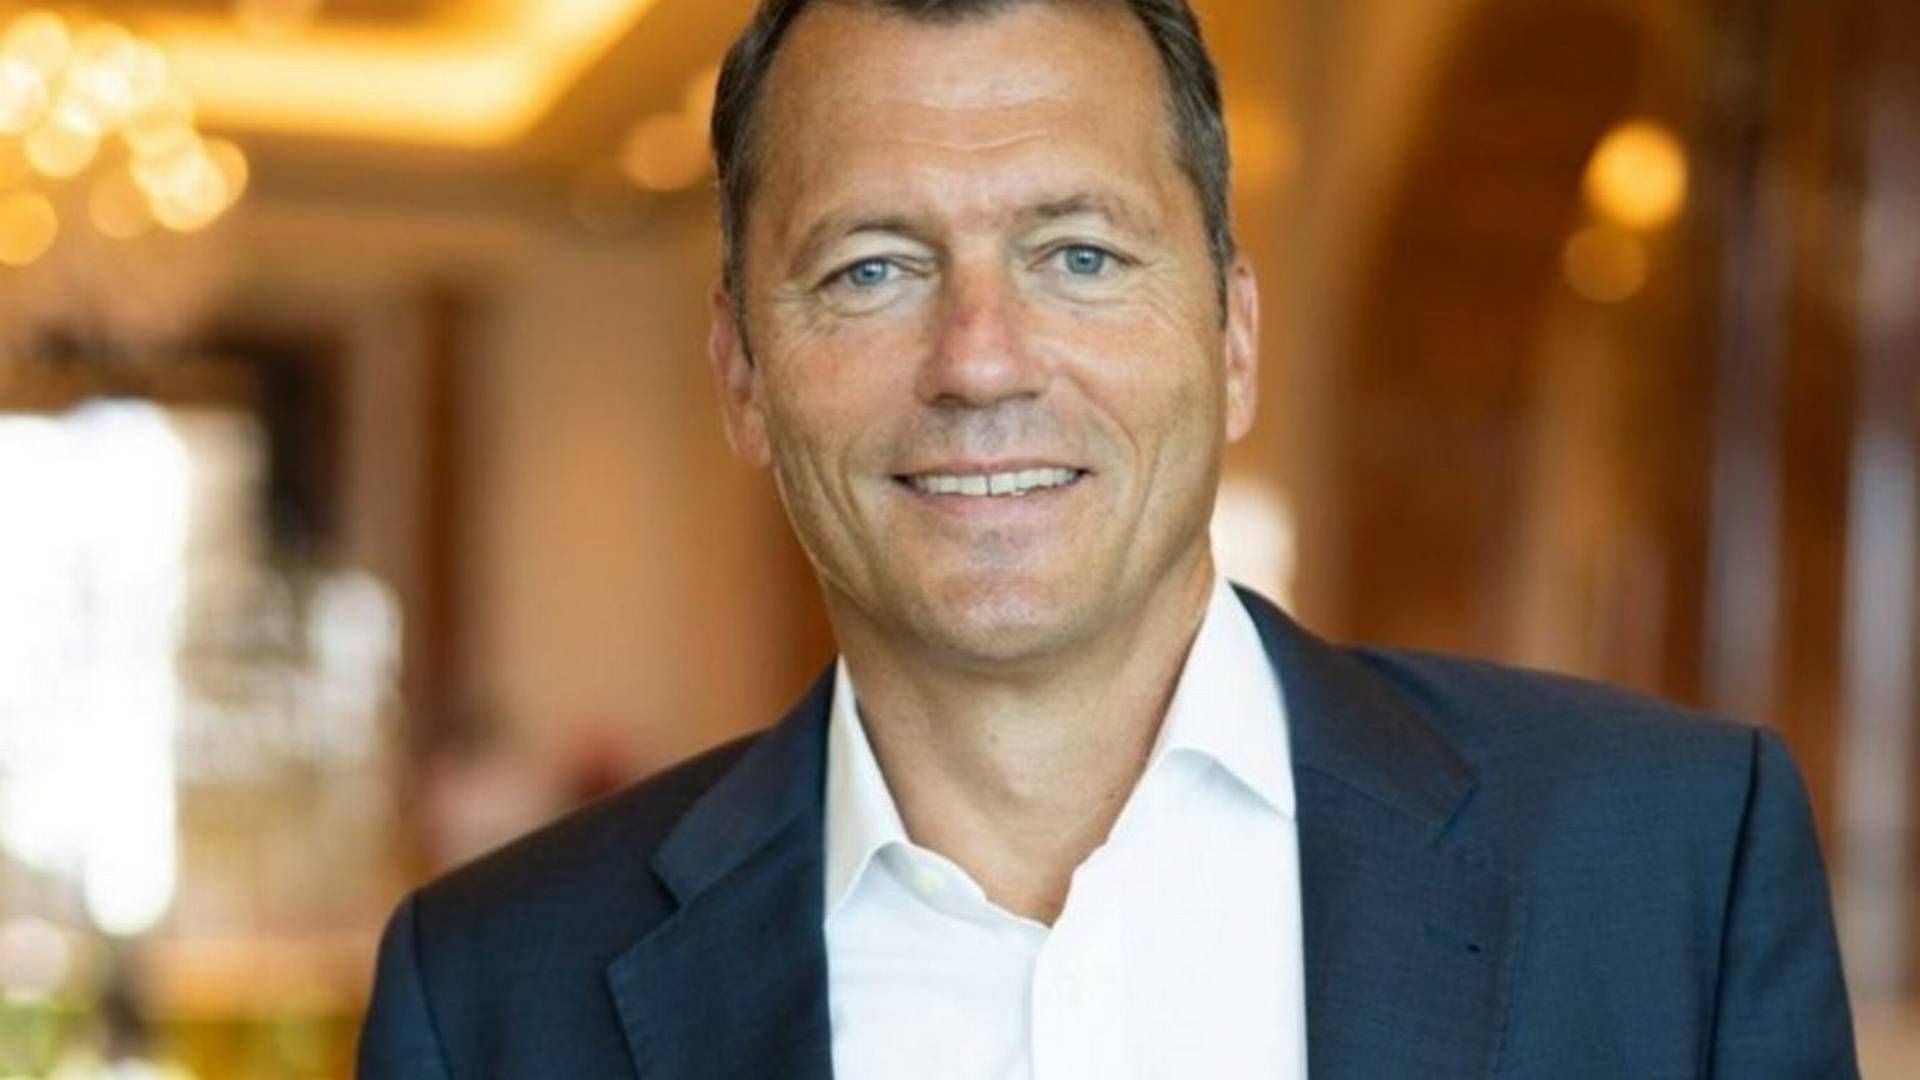 CEO of Topsoe Jan Toschka | Photo: Shell